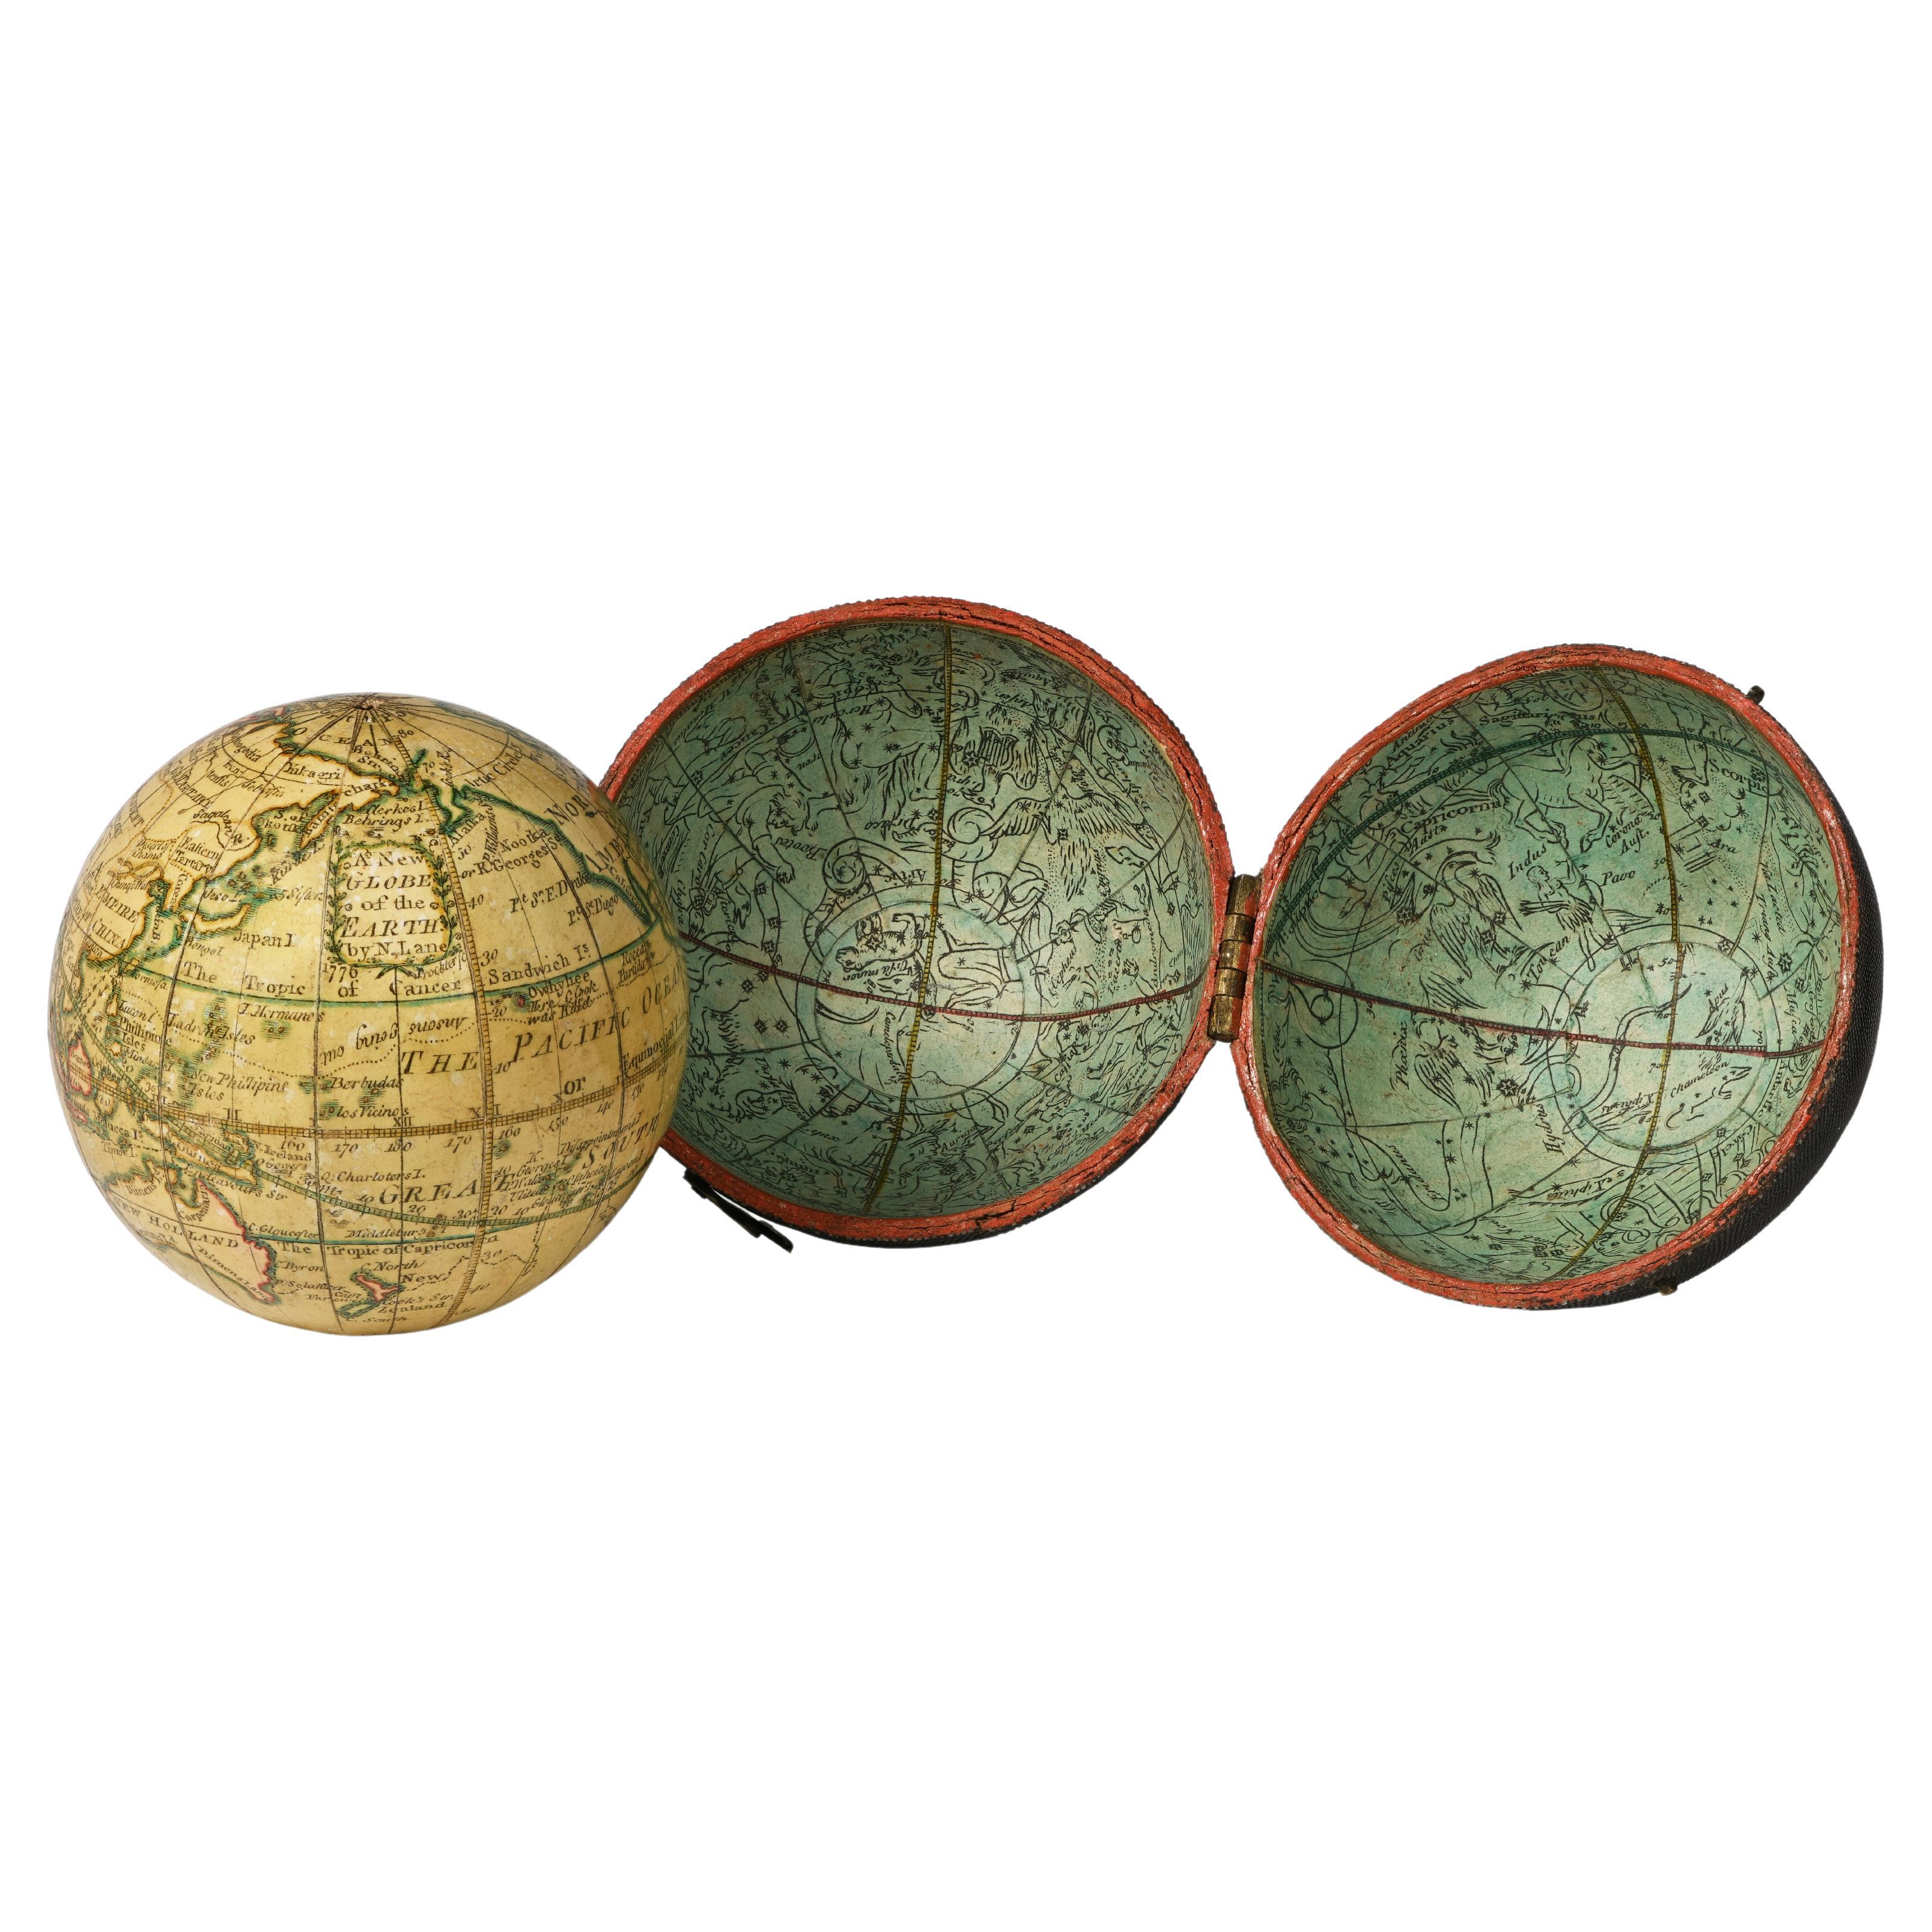 Pocket Globe, Nicholas Lane, London, post 1779